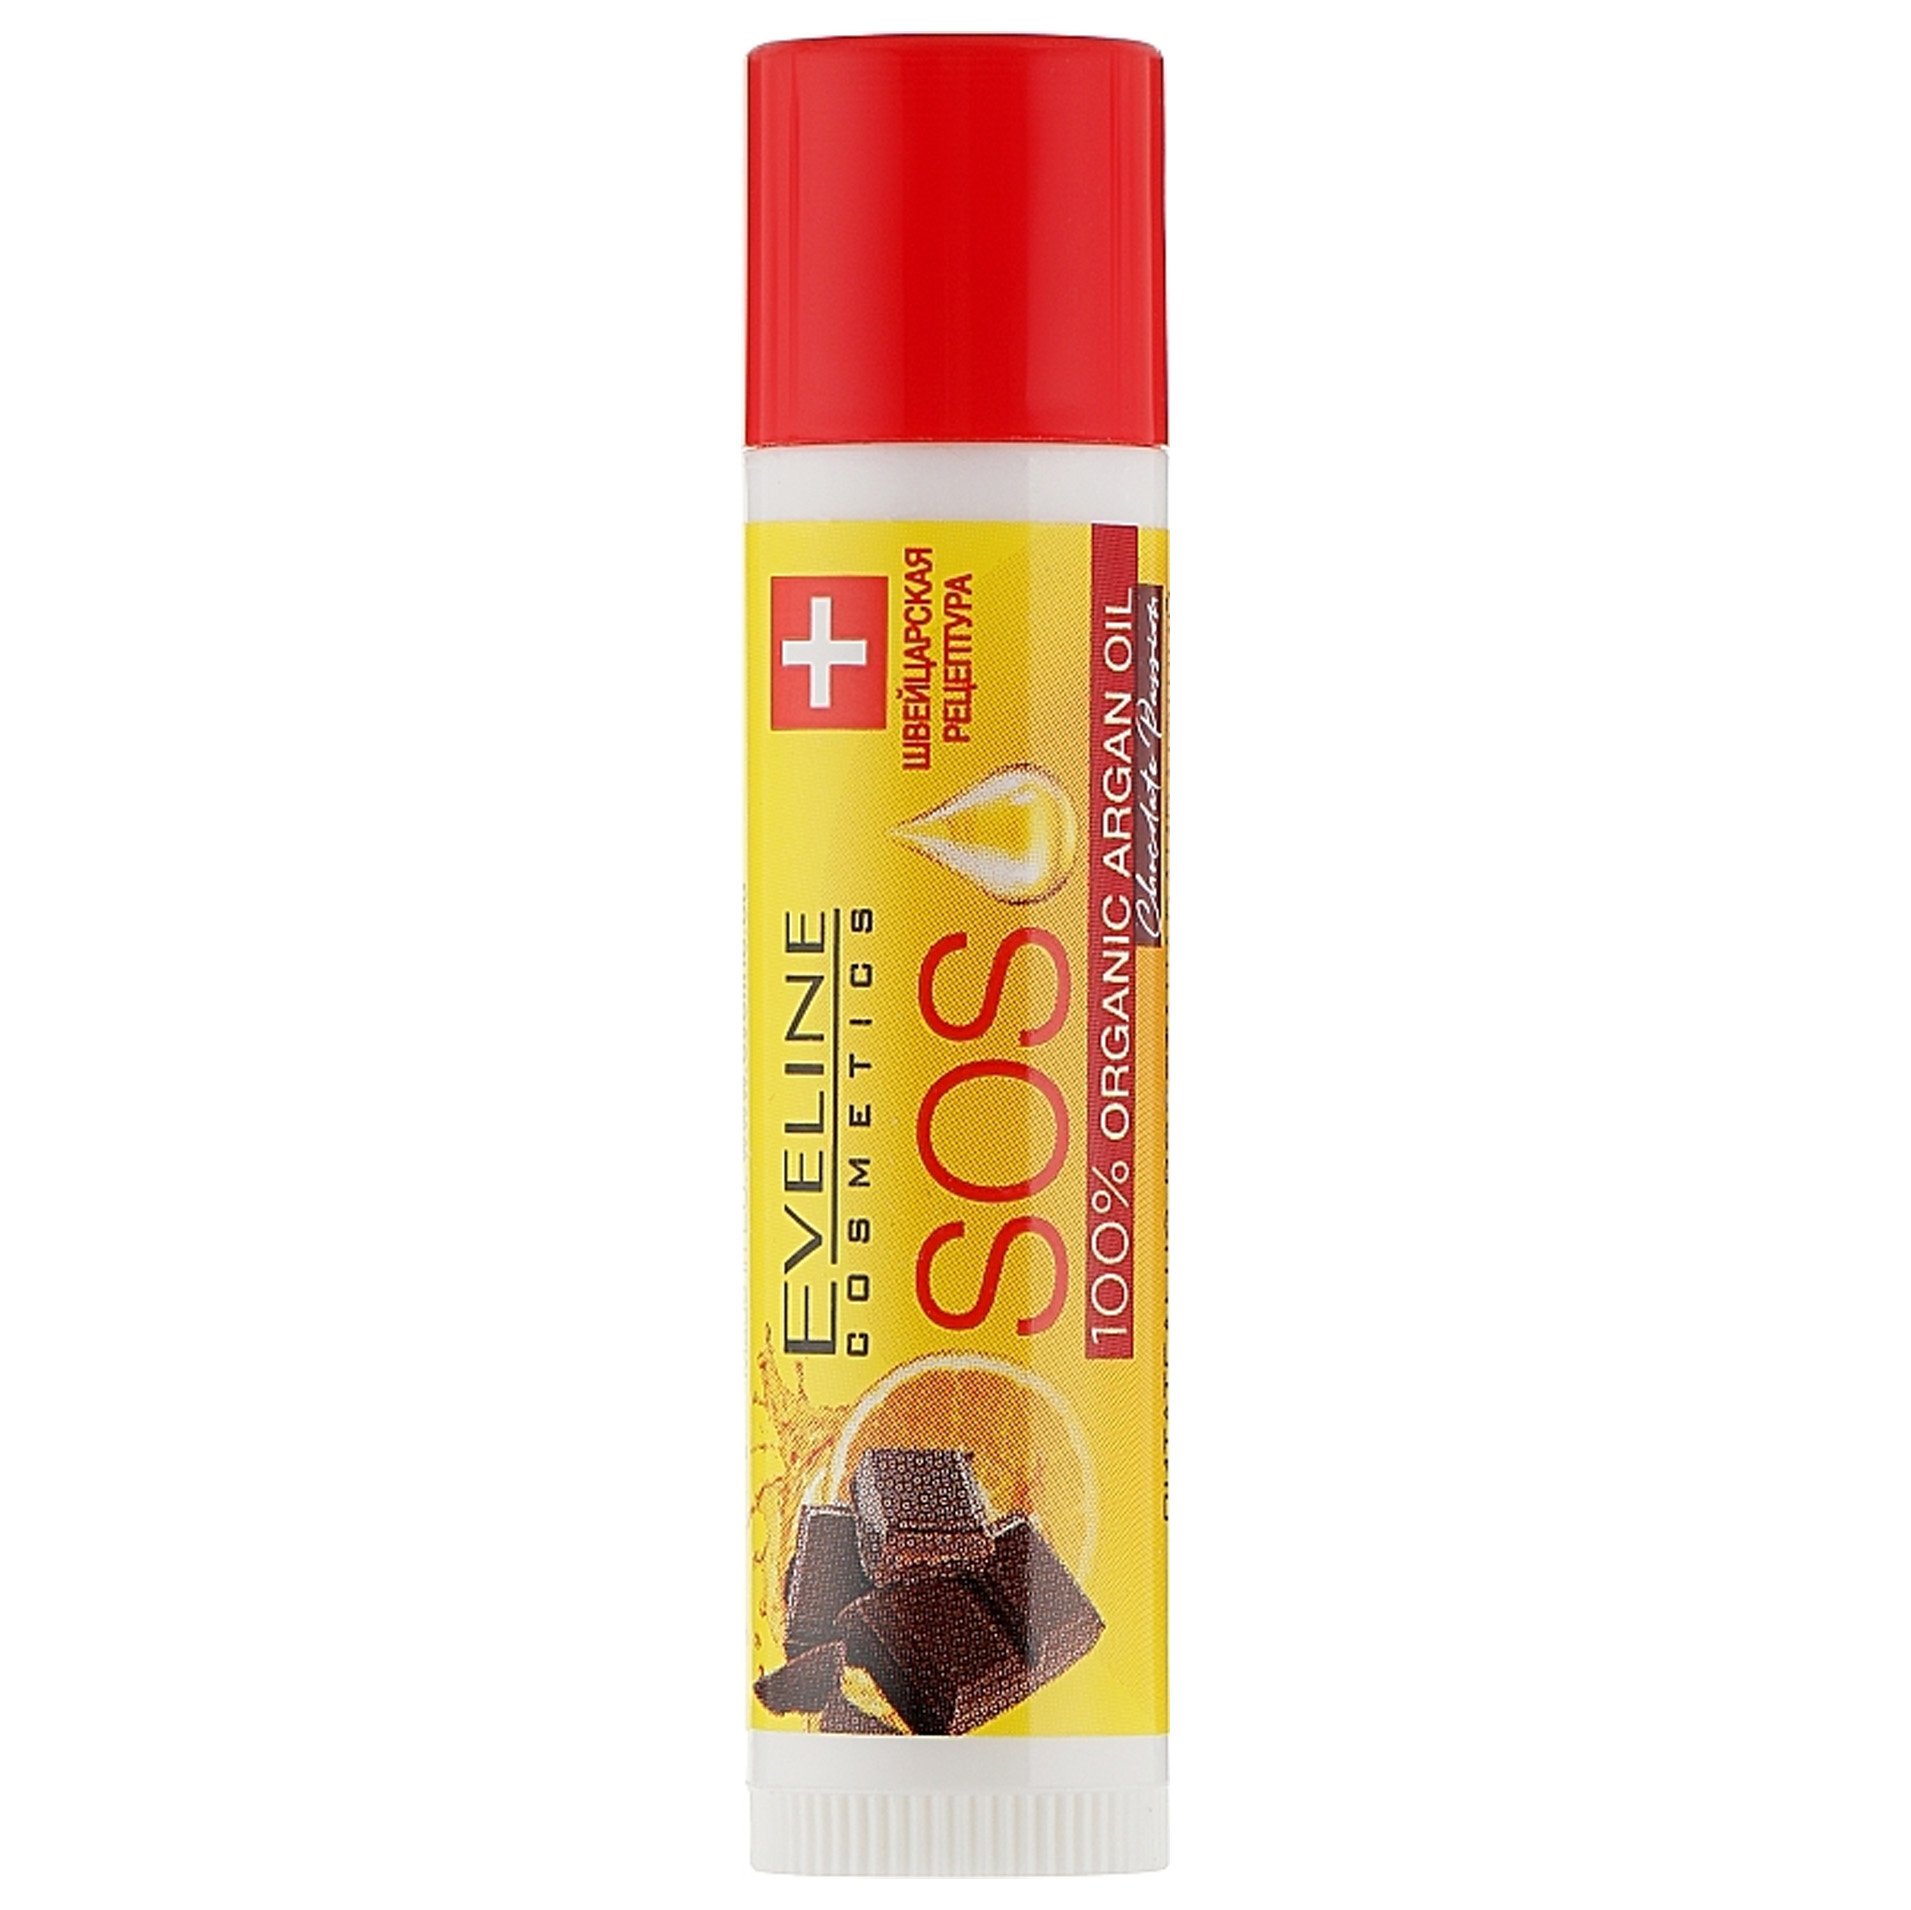 Бальзам для губ Eveline питательно-восстанавливающий SOS 100% Organic Argan Oil, Chocolate Passion, SPF 10, 4,5 г - фото 2